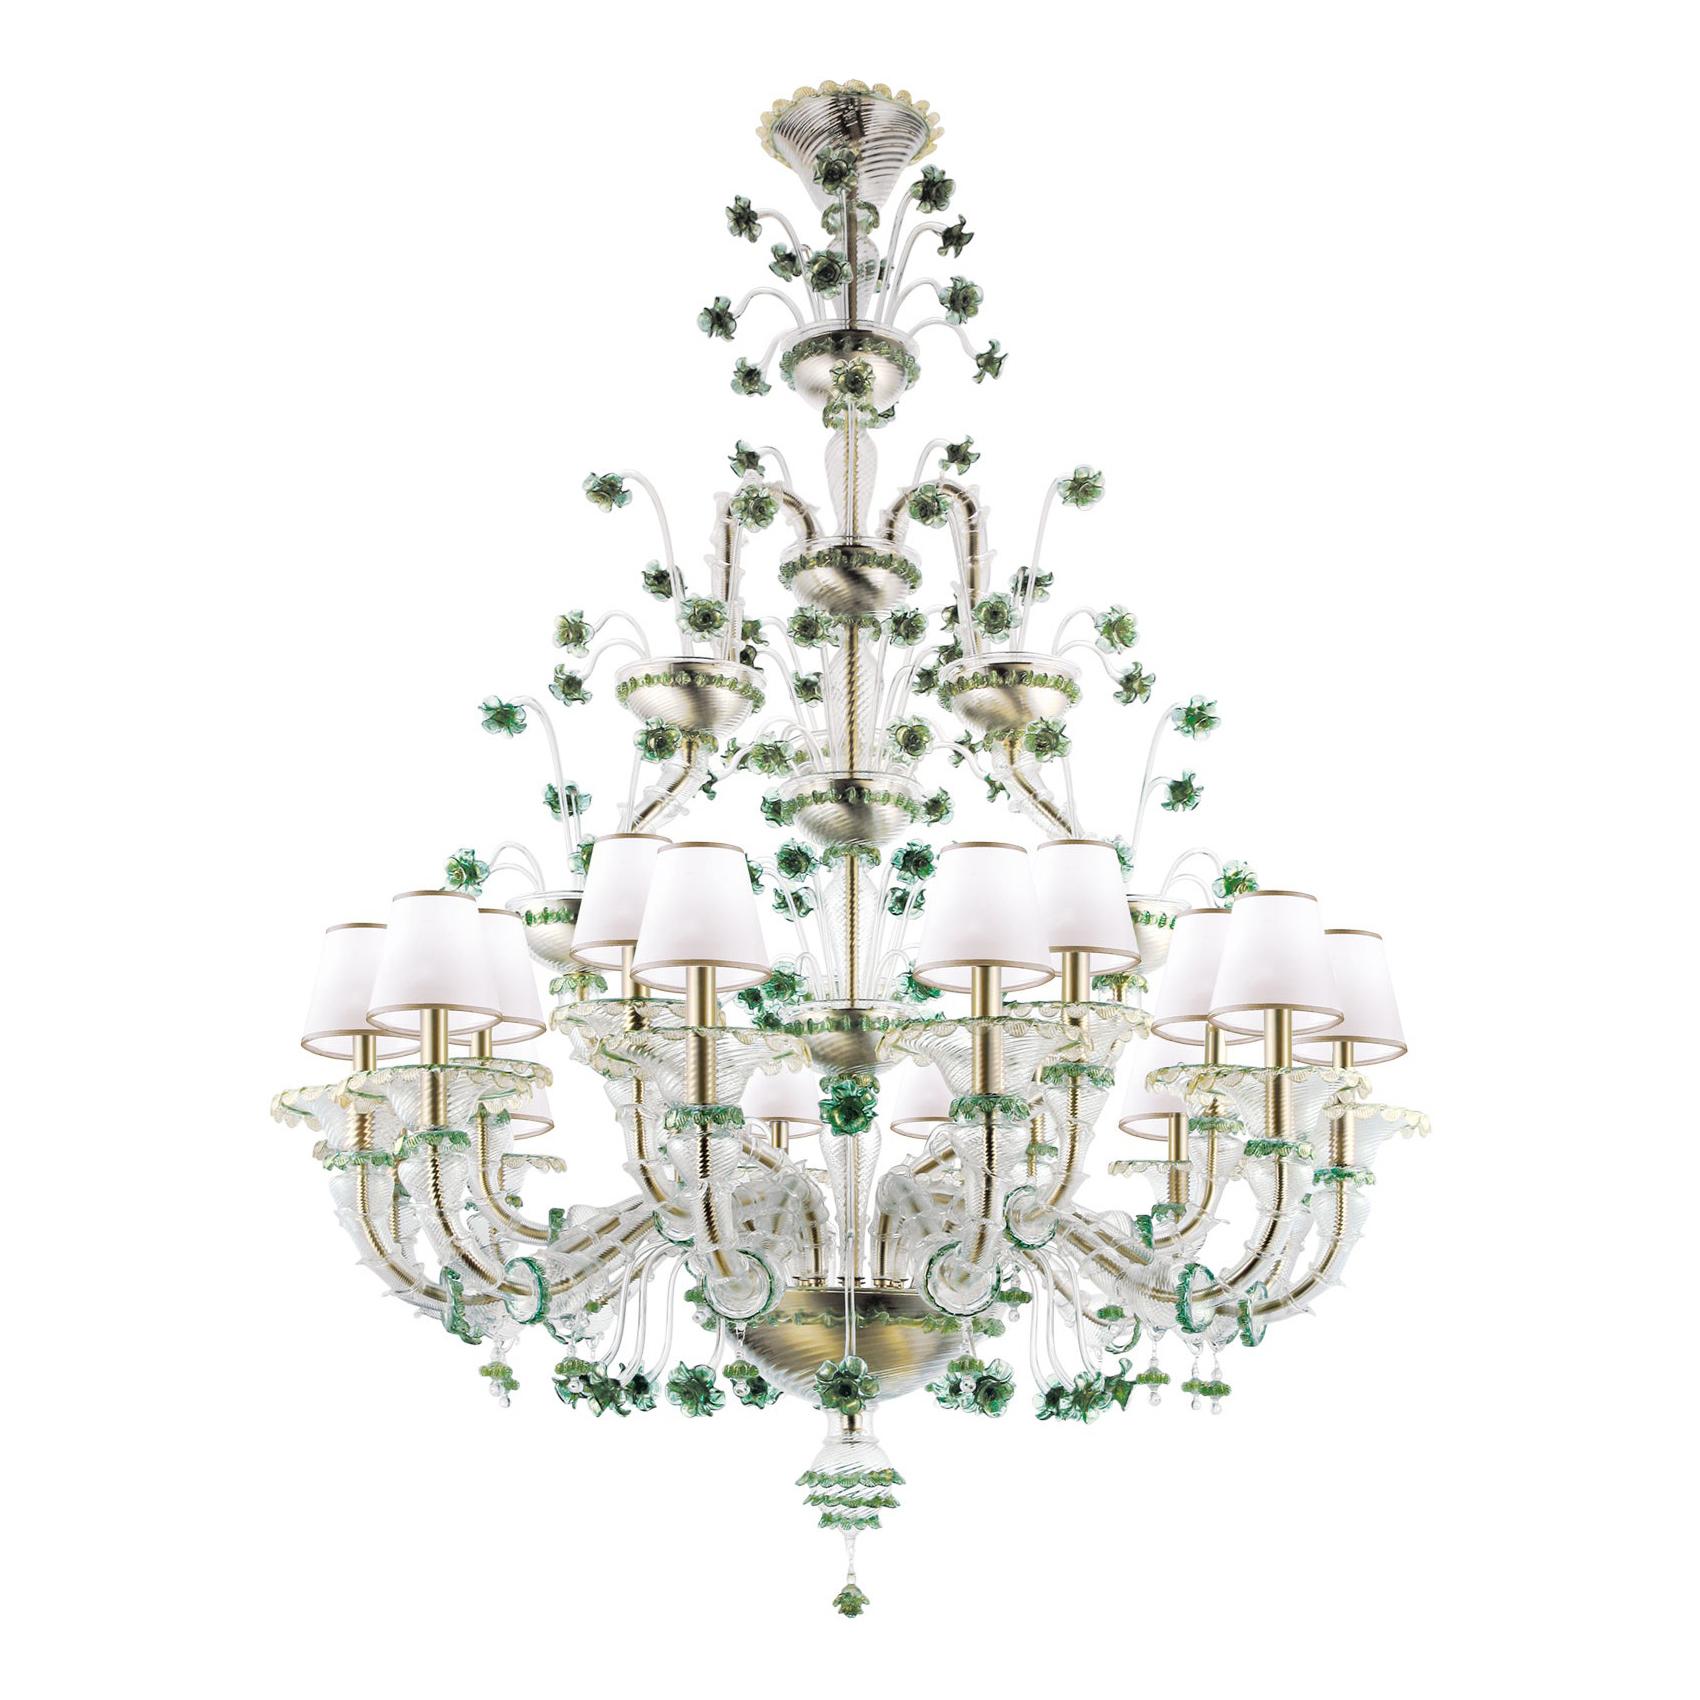 Artistic Handmade Murano Glass Chandelier Ca' Rezzonico by La Murrina